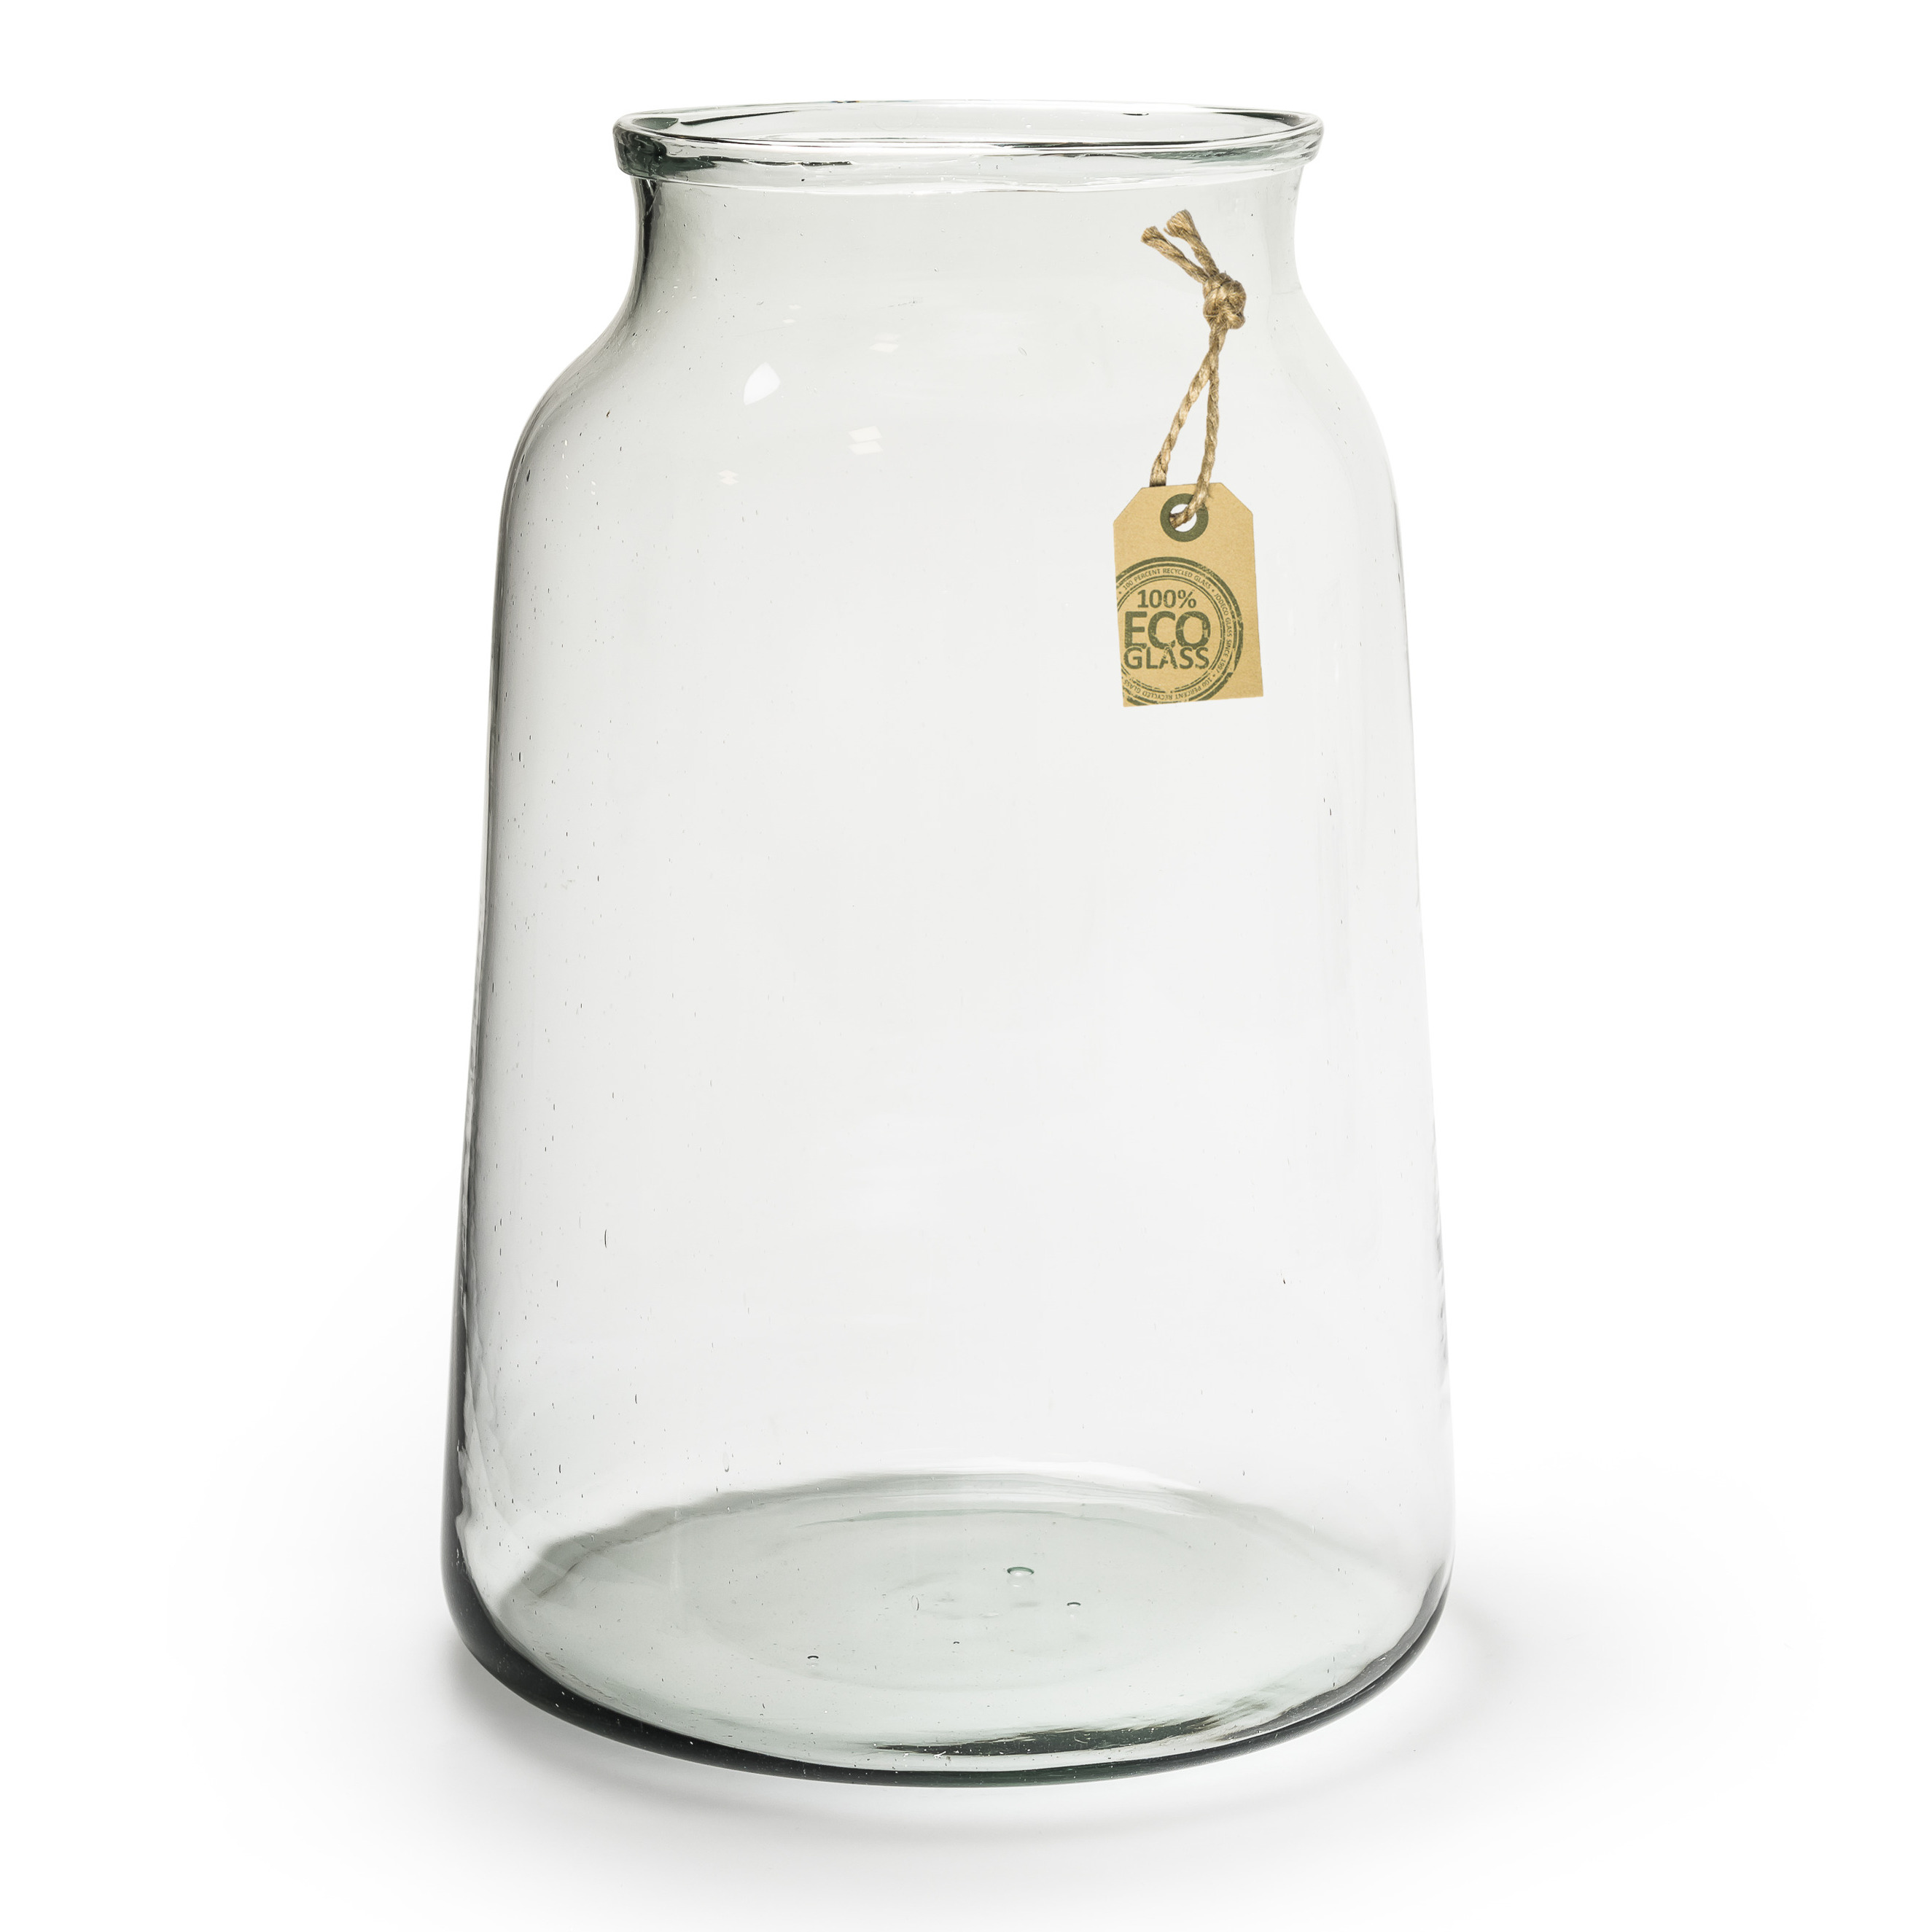 Transparante Eco taps toelopende vaas-vazen van glas 35 x 17 cm